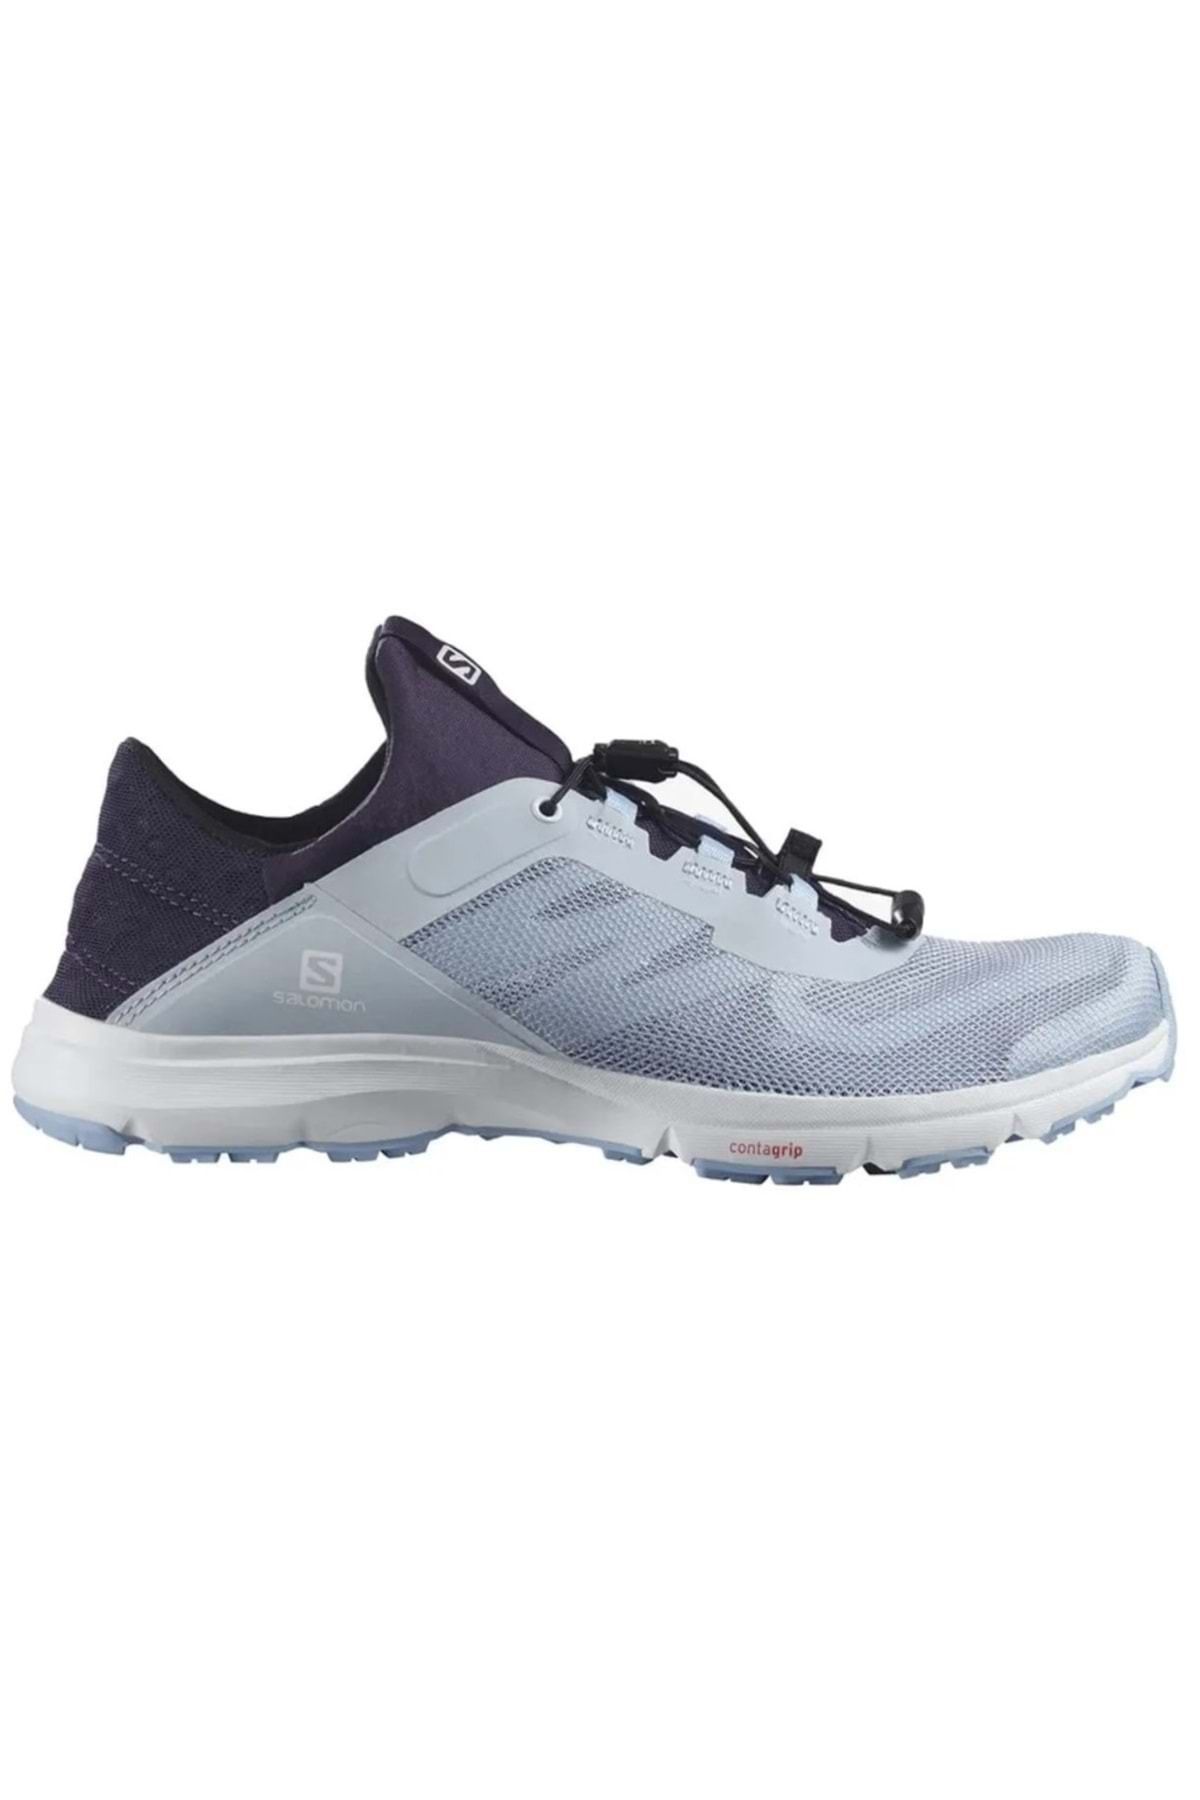 Salomon Amphib Bold 2 Su Ayakkabısı Unisex Spor Ayakkabı Lila